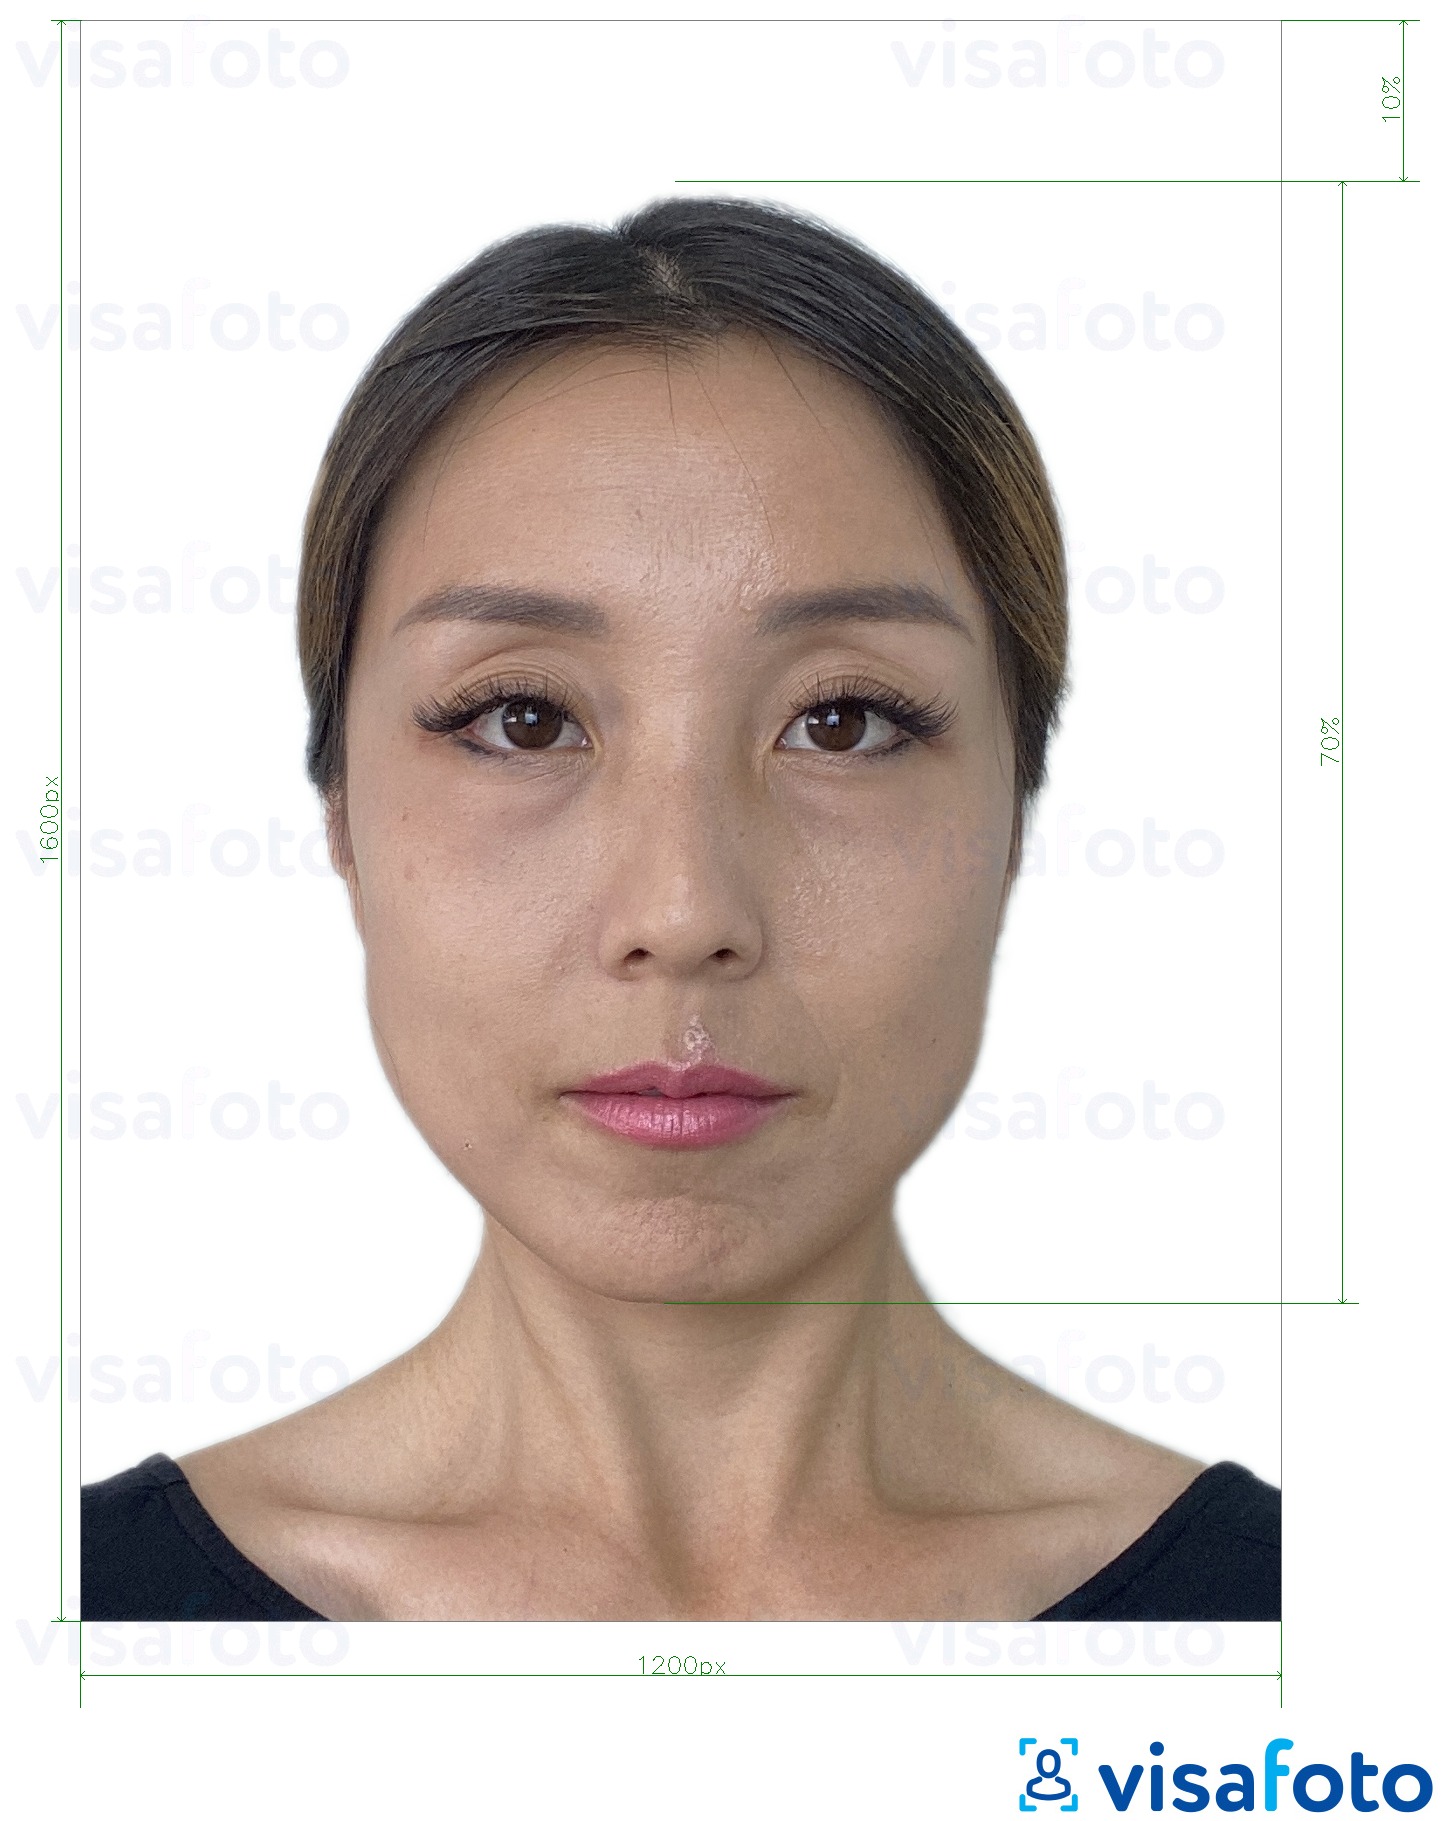 Voorbeeld van foto voor Hong Kong online e-visum 1200x1600 pixels met exacte maatspecificatie